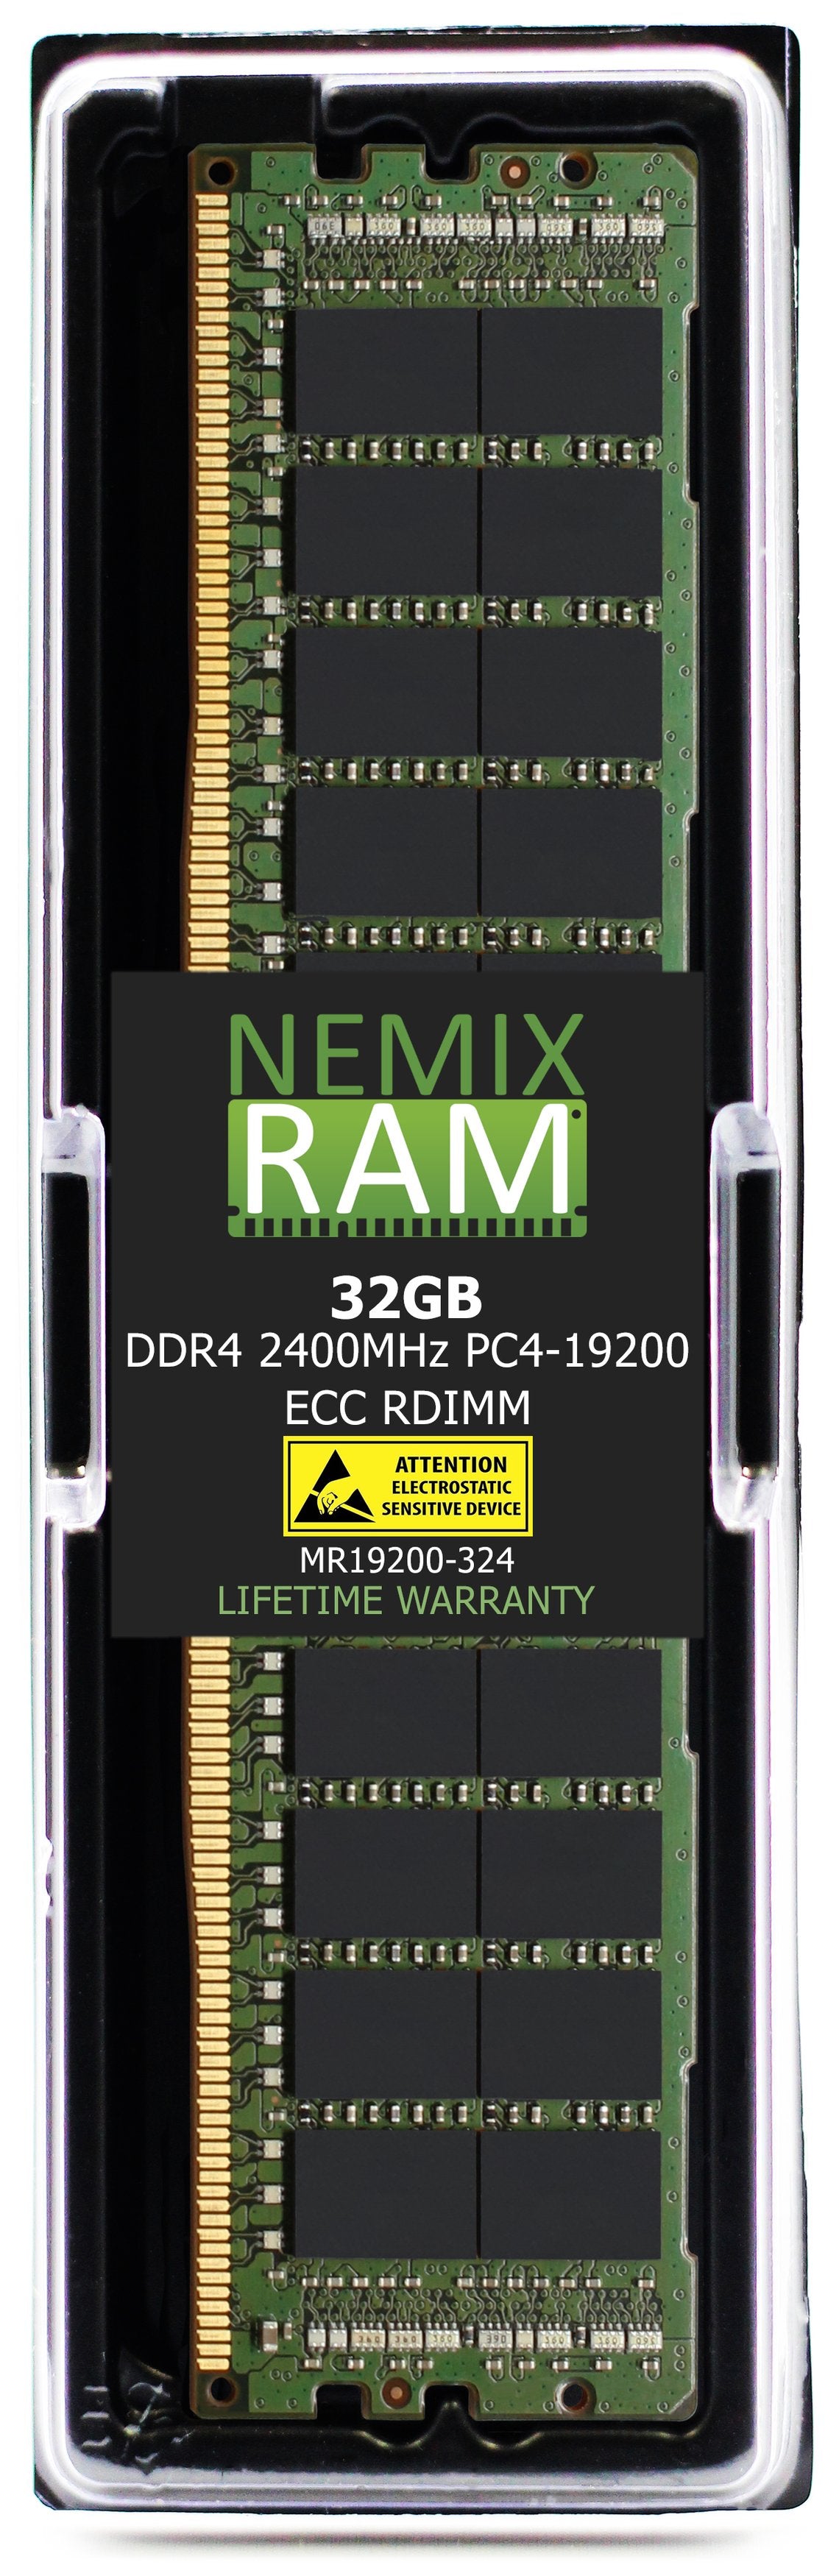 32GB DDR4 2400MHZ PC4-19200 VLP RDIMM Compatible with Supermicro MEM-DR432L-CV01-ER24